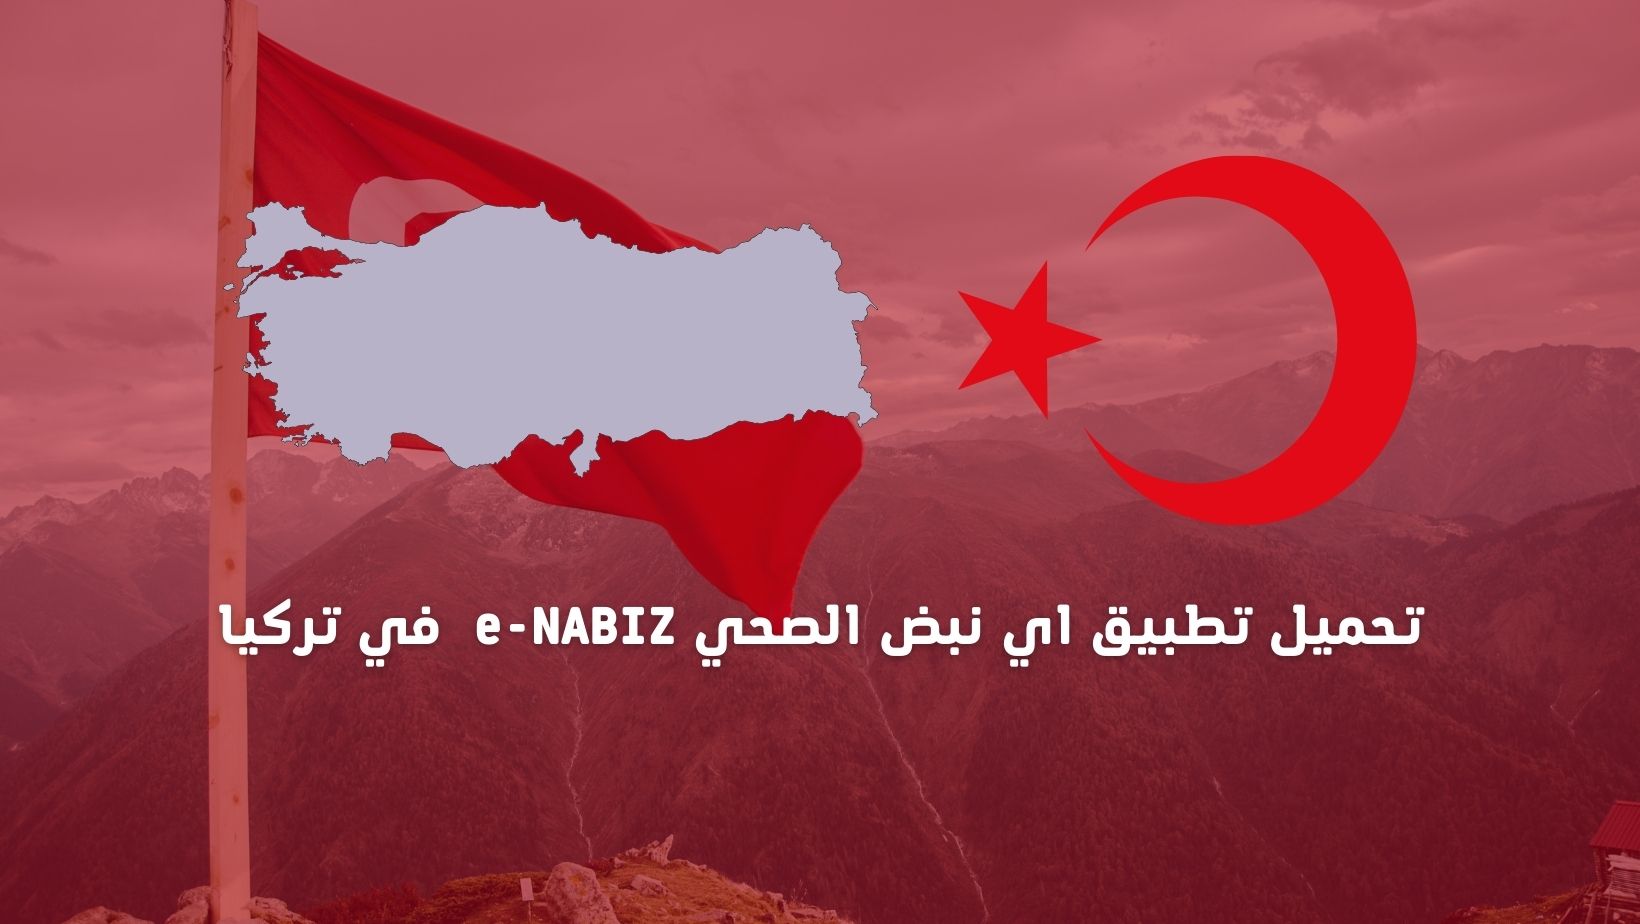 تحميل تطبيق اي نبض الصحي e-NABIZ  في تركيا